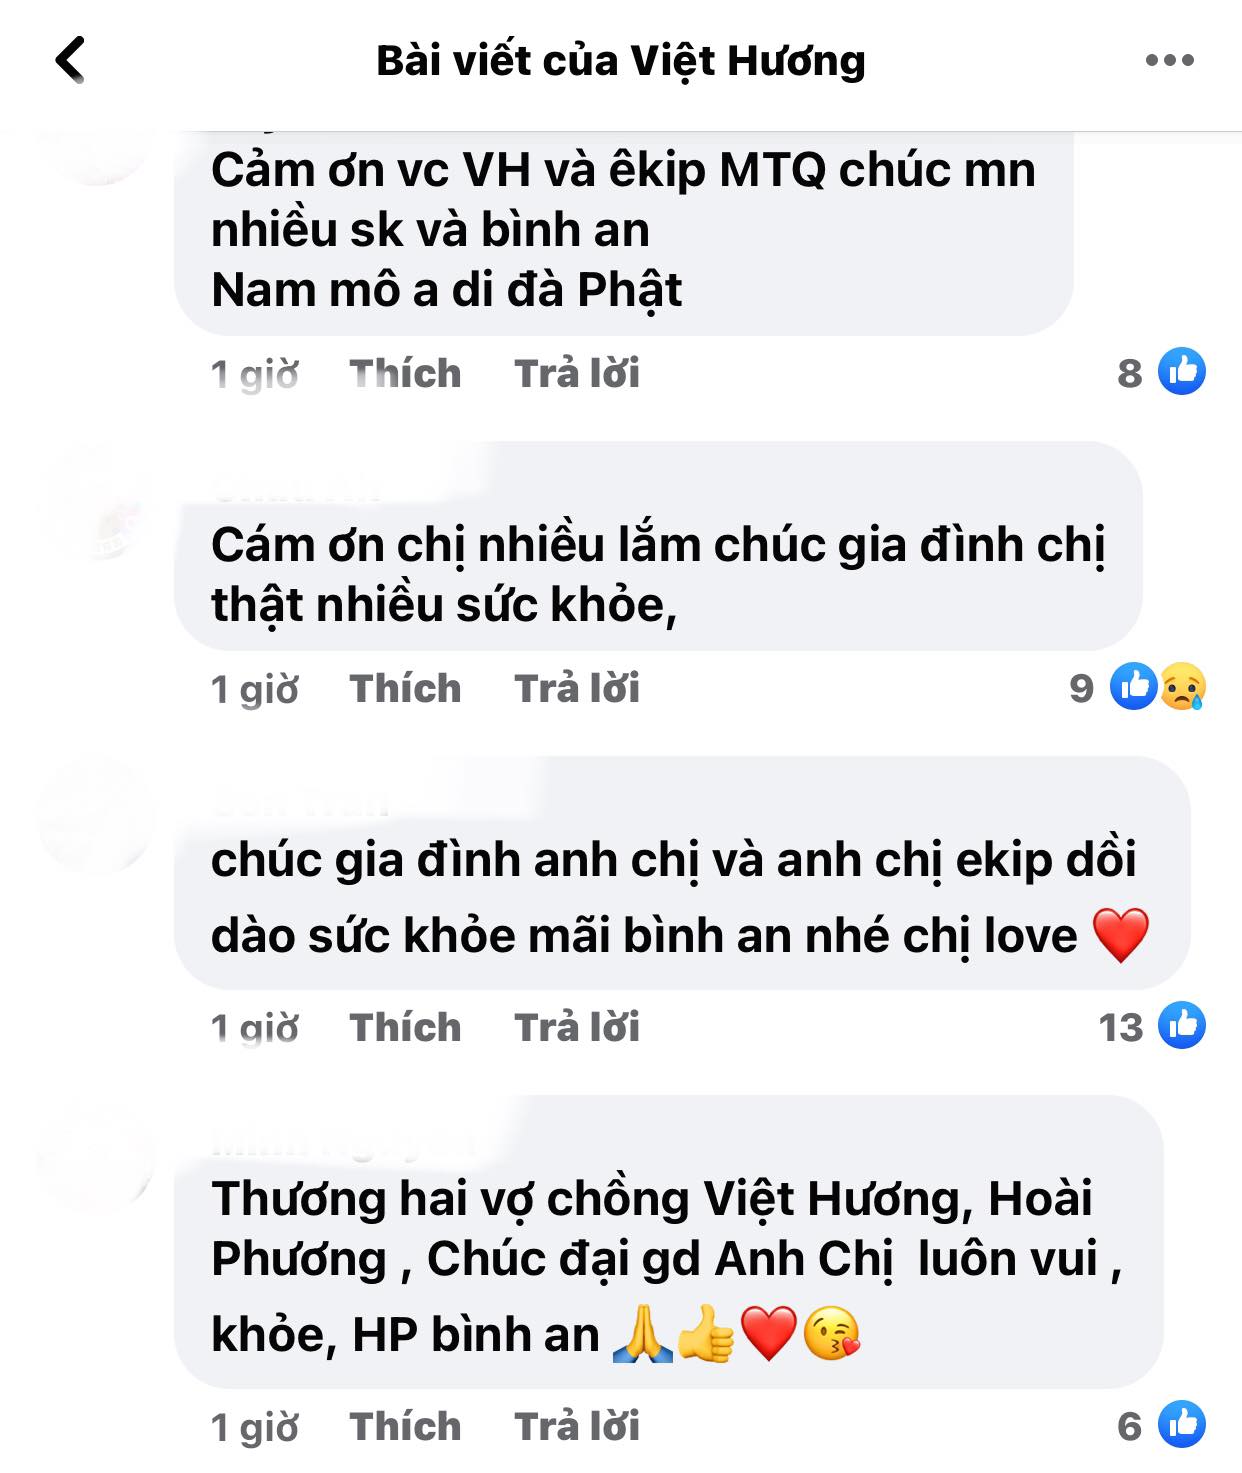 Viet-huong-dang-tam-thu-gui-den-cong-chung-ket-thuc-hanh-trinh-cuu-tro-sai-gon